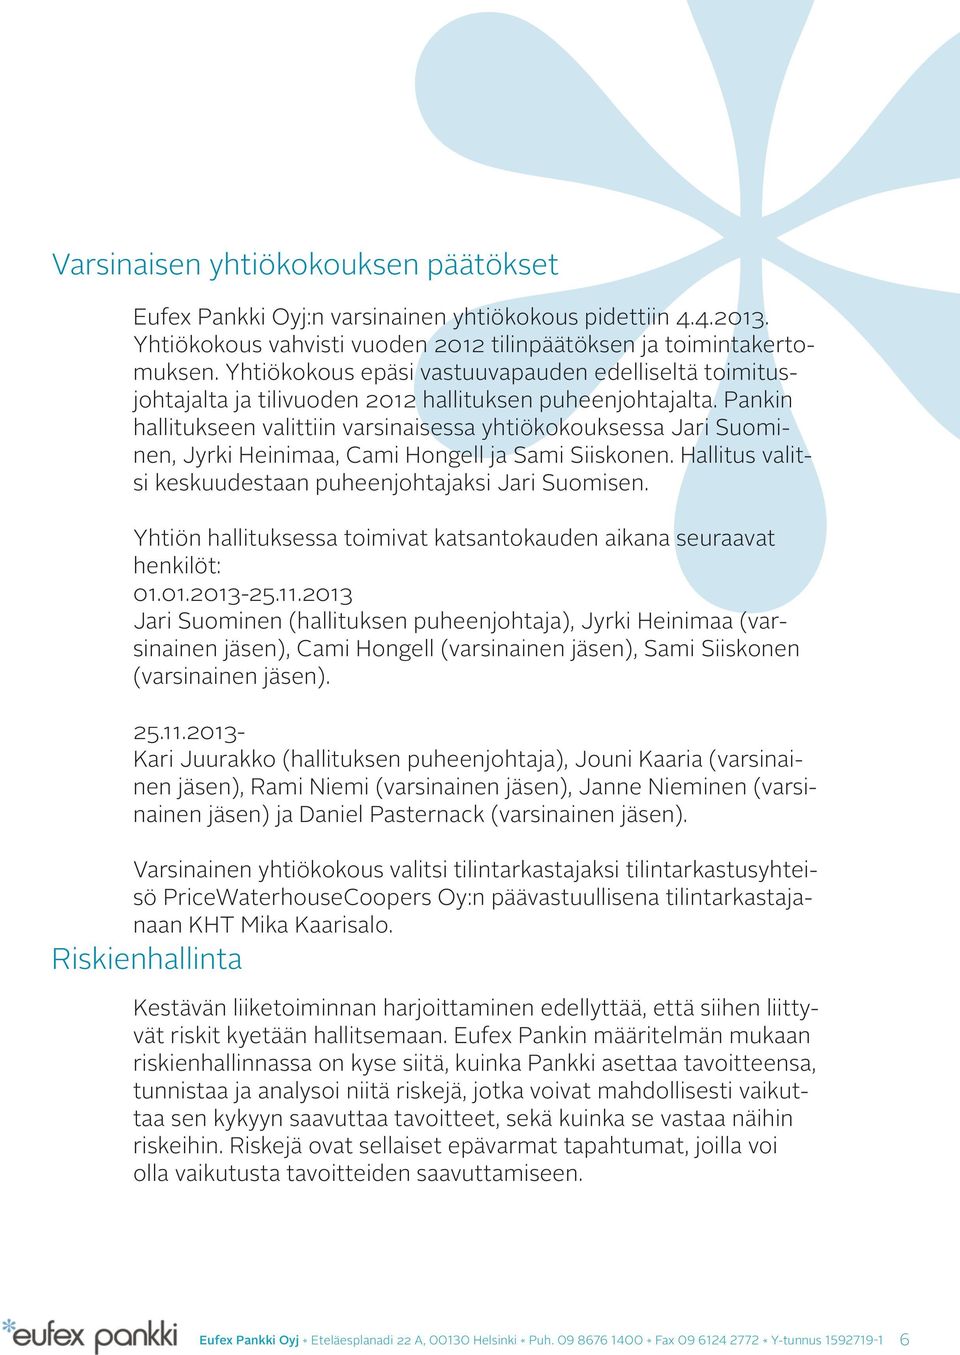 Pankin hallitukseen valittiin varsinaisessa yhtiökokouksessa Jari Suominen, Jyrki Heinimaa, Cami Hongell ja Sami Siiskonen. Hallitus valitsi keskuudestaan puheenjohtajaksi Jari Suomisen.